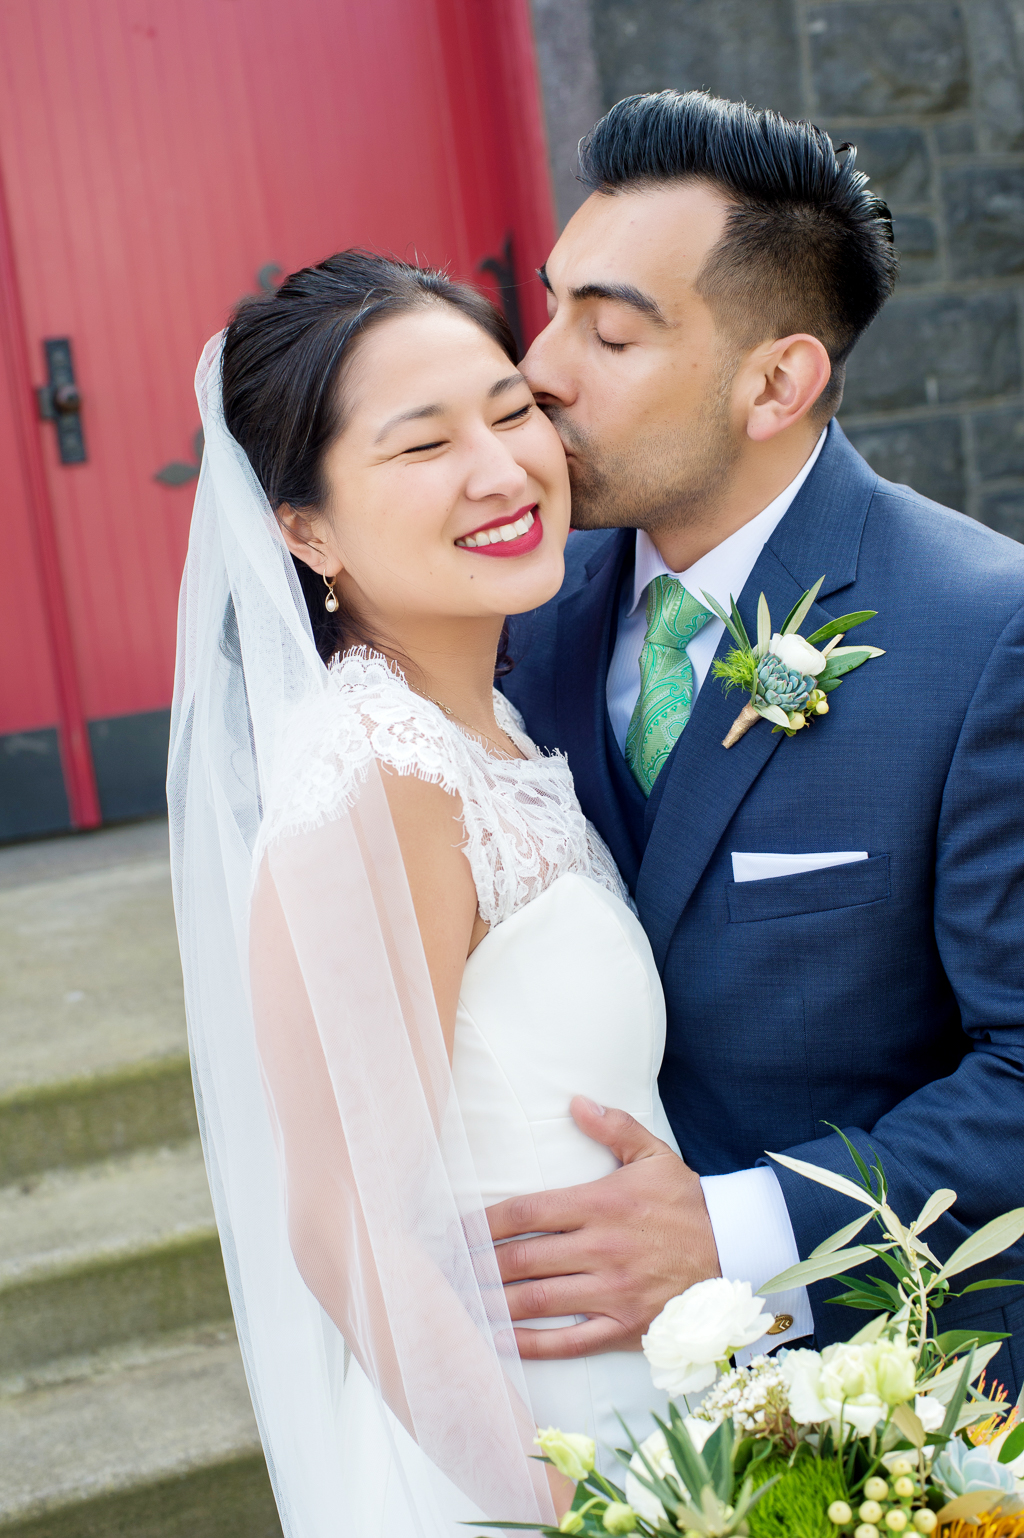 groom kisses brides cheek in front of a red door